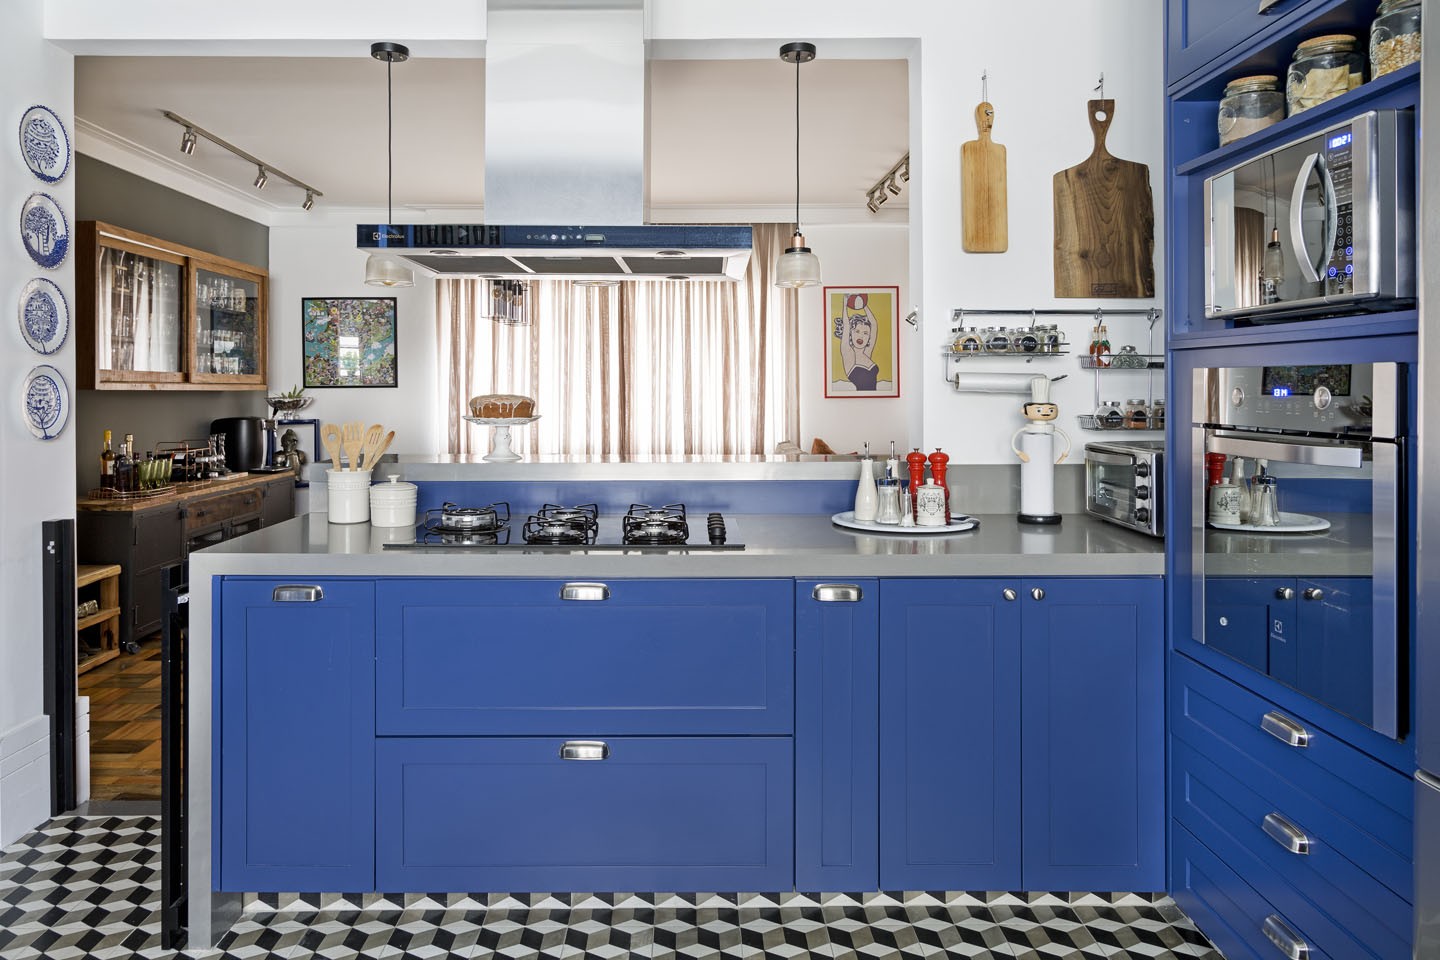 Décor do dia: cozinha integrada na cor Classic Blue (Foto: Julia Ribeiro/Divulgação)